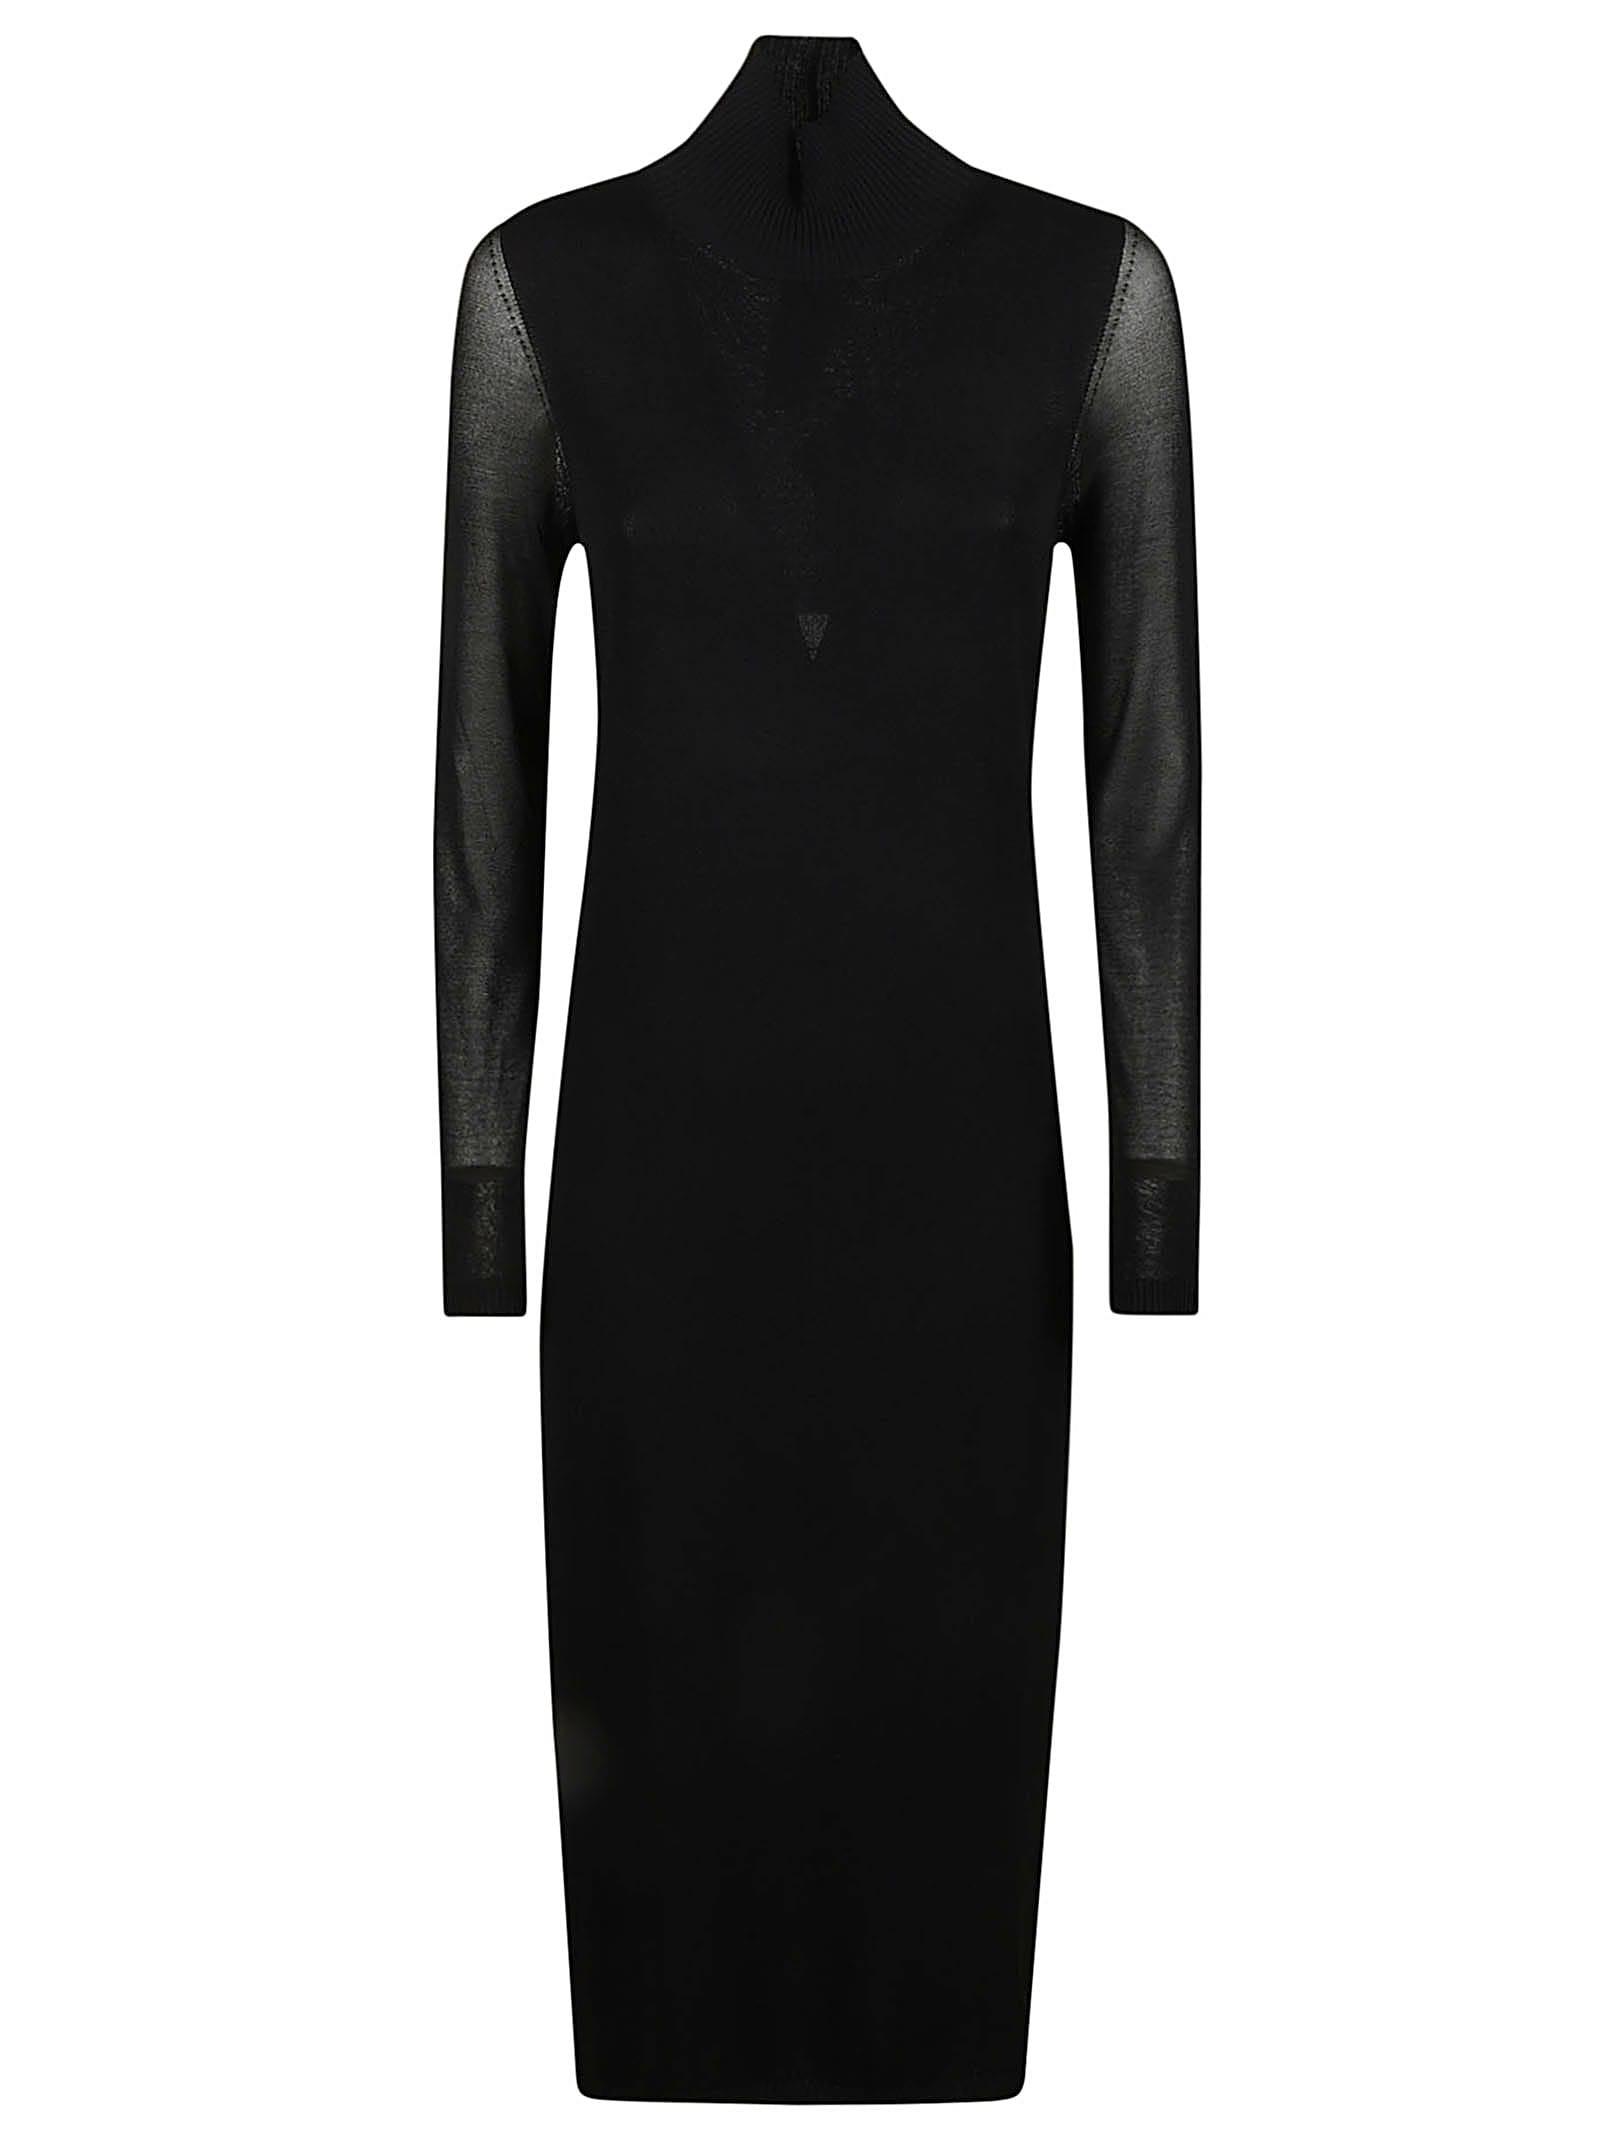 Max Mara Natalia Dress in Black | Lyst